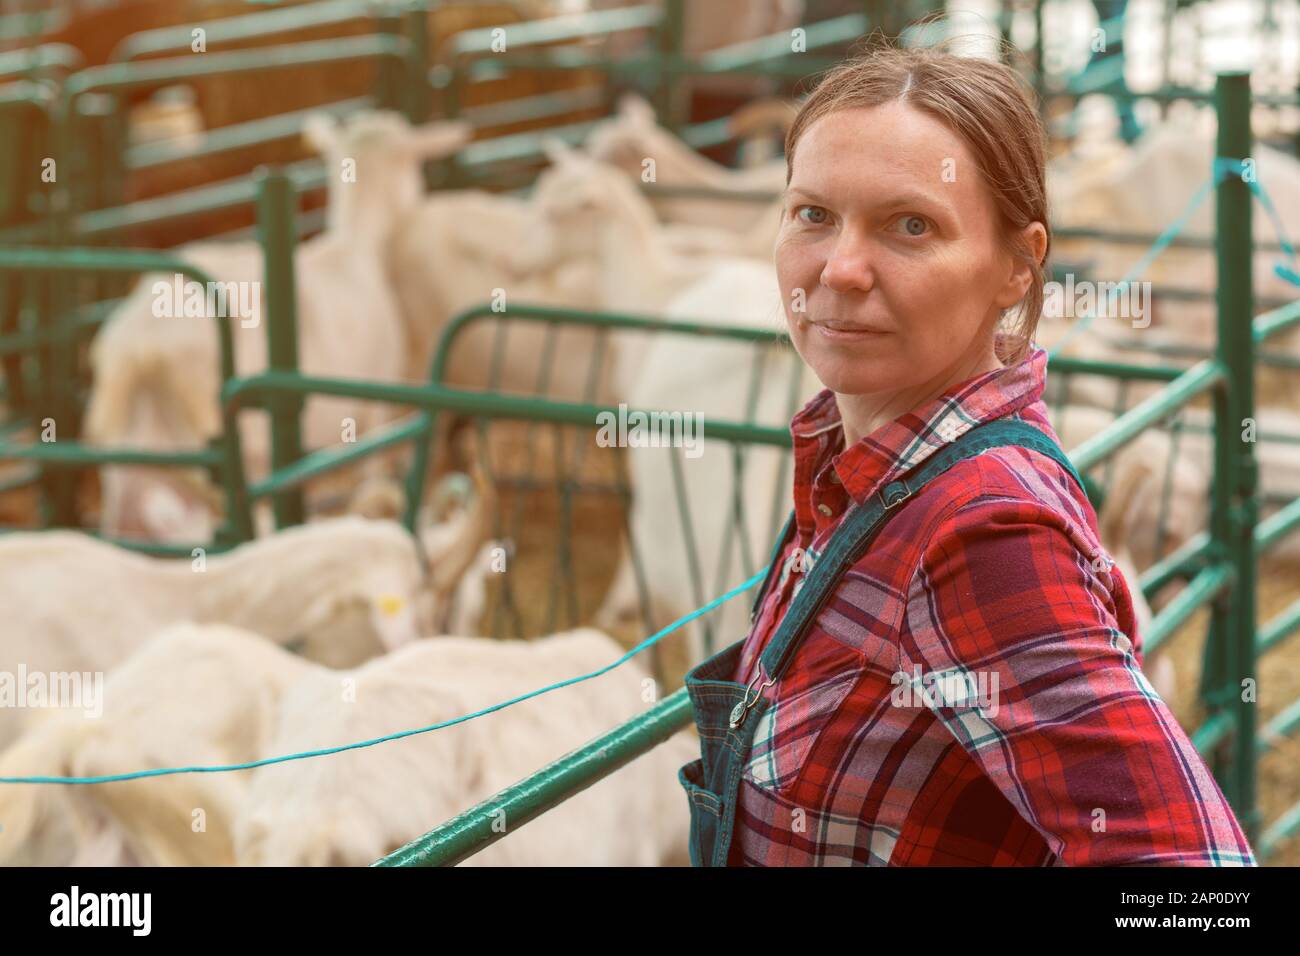 La productrice à la ferme d'élevage de chèvres et de contrôler l'troupeau d'animaux domestiques Banque D'Images